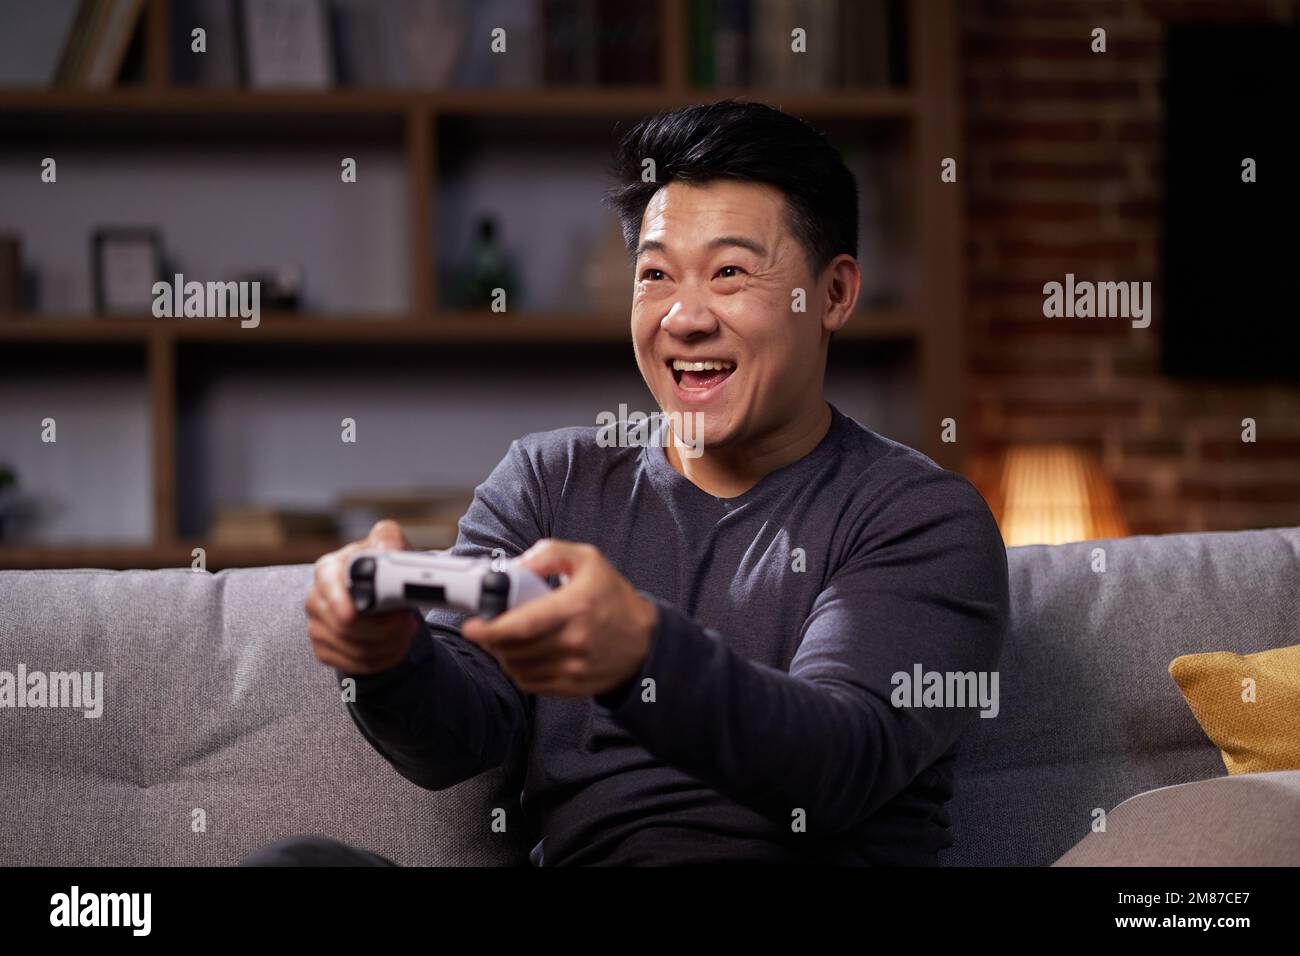 Glücklicher asiatischer Mann, der einen drahtlosen Joystick verwendet und zu Hause Videospiele spielt. Fröhlicher Mann, der PlayStation nutzt und in virtuellen Spielen gegeneinander antreten kann, während er sich ausruht Stockfoto